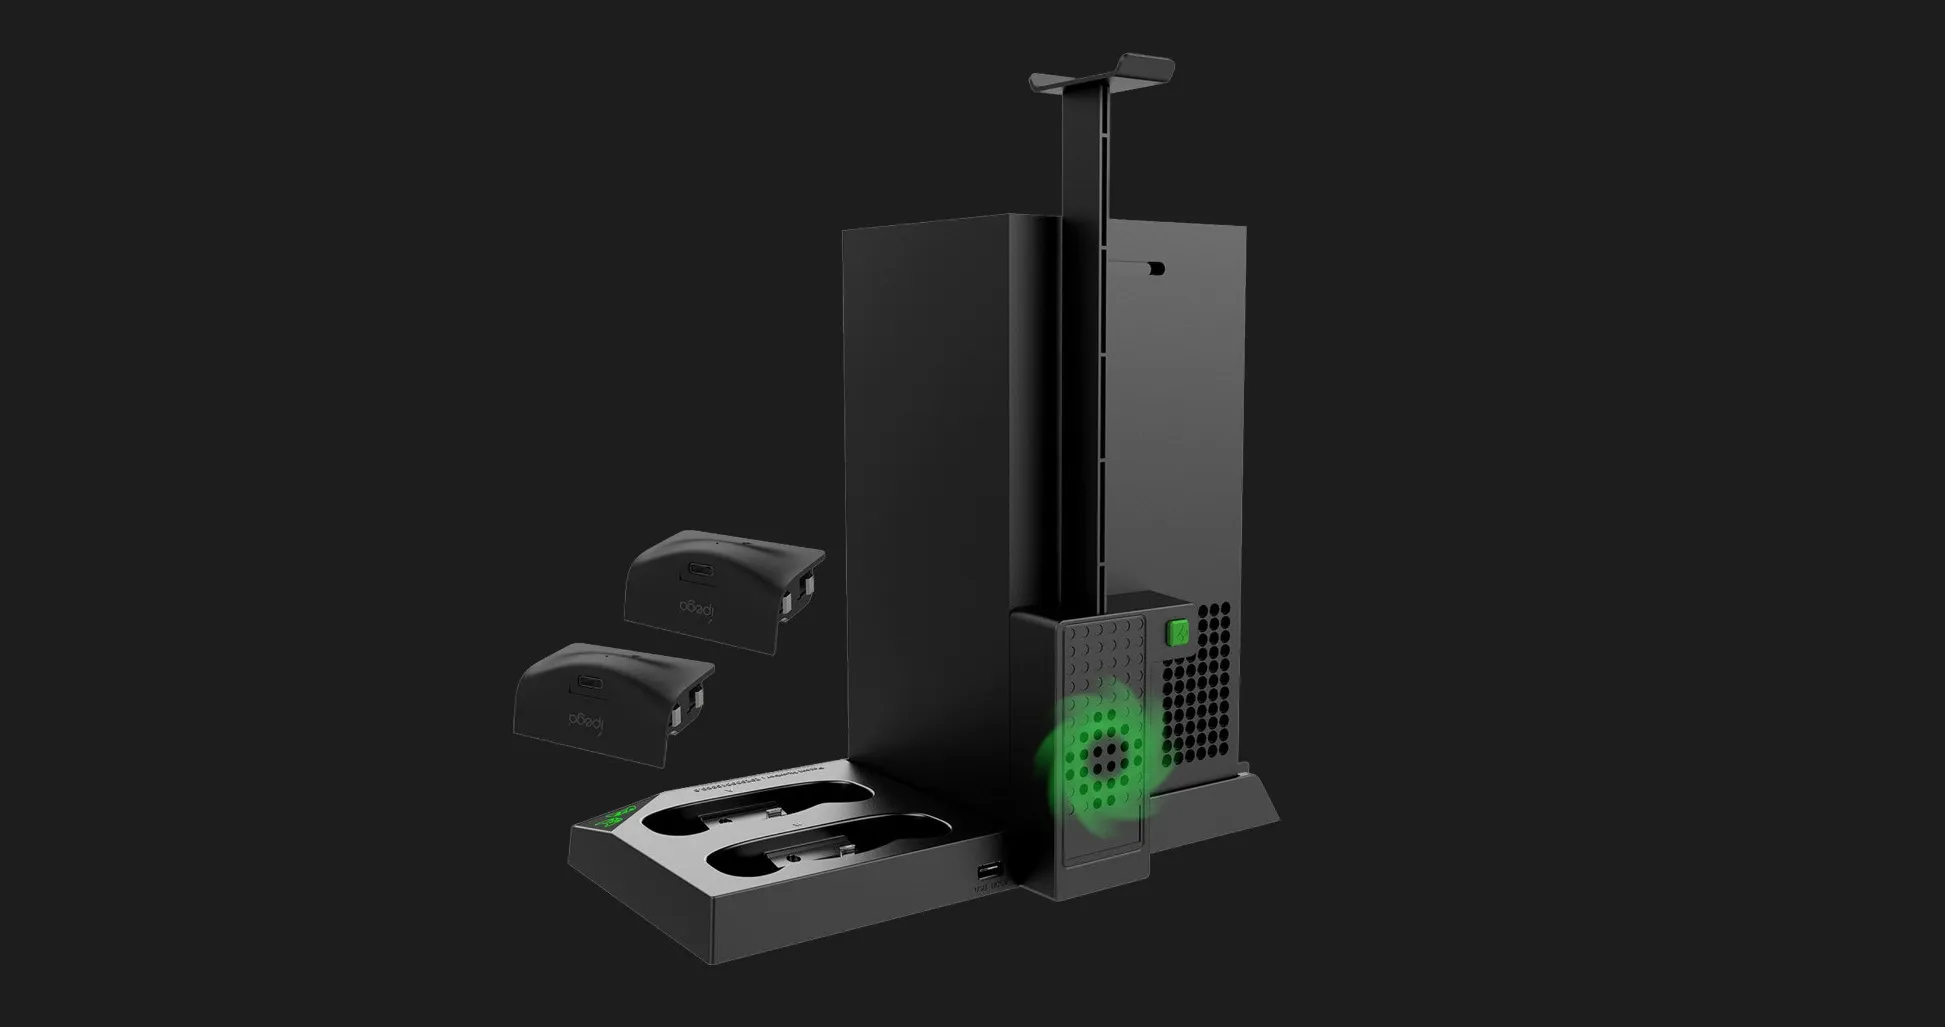 Зарядная станция iPega PG-XBX013 для Xbox X (Black)